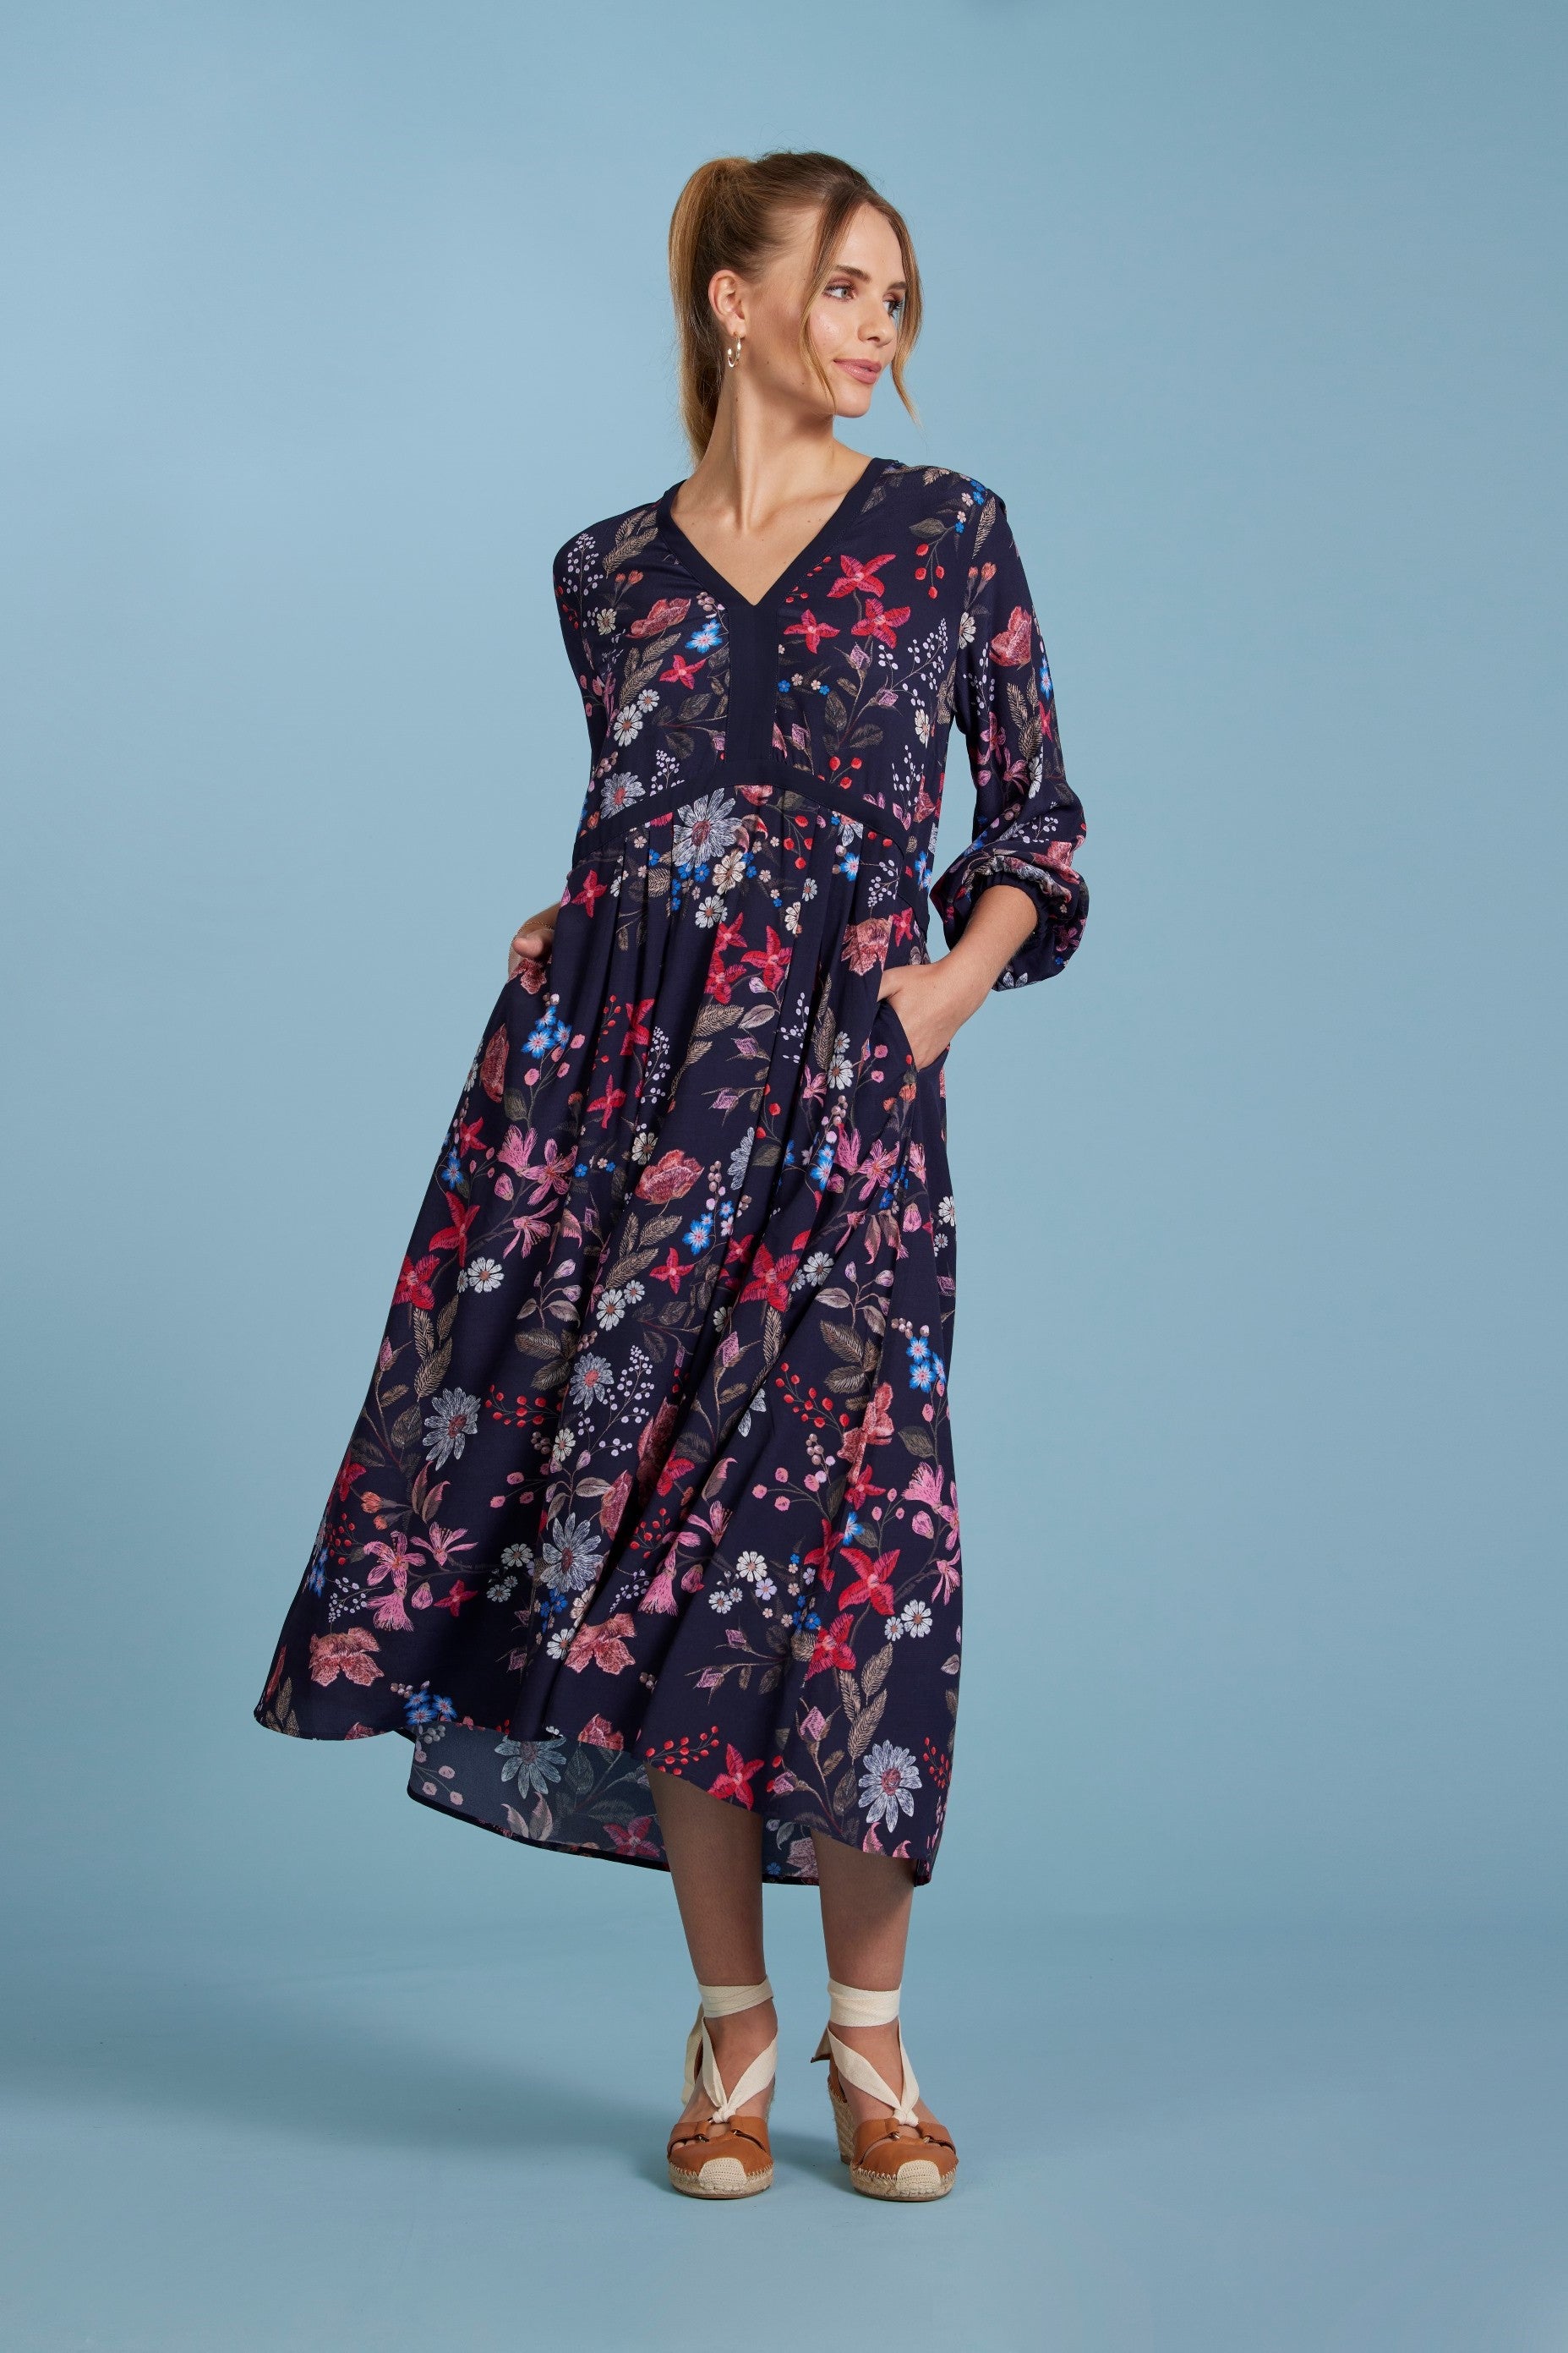 Madly Sweetly - MS1000 Sew Lovely Dress – Magazine Designer Clothing